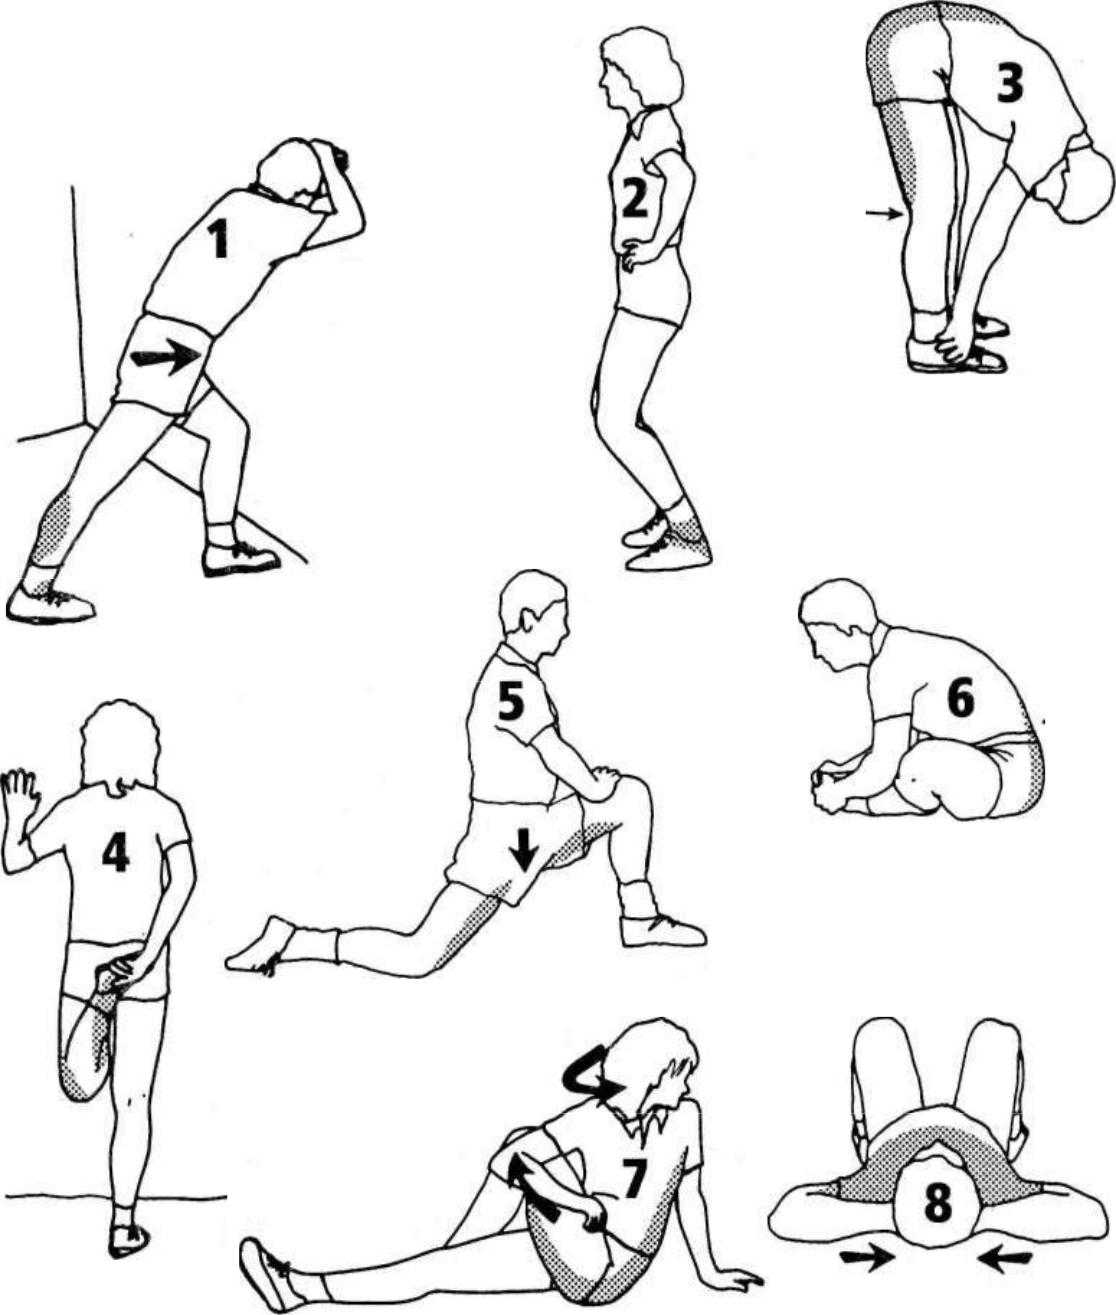 Стретчинг упражнения для начинающих: программа тренировок, фото и видео | irksportmol.ru